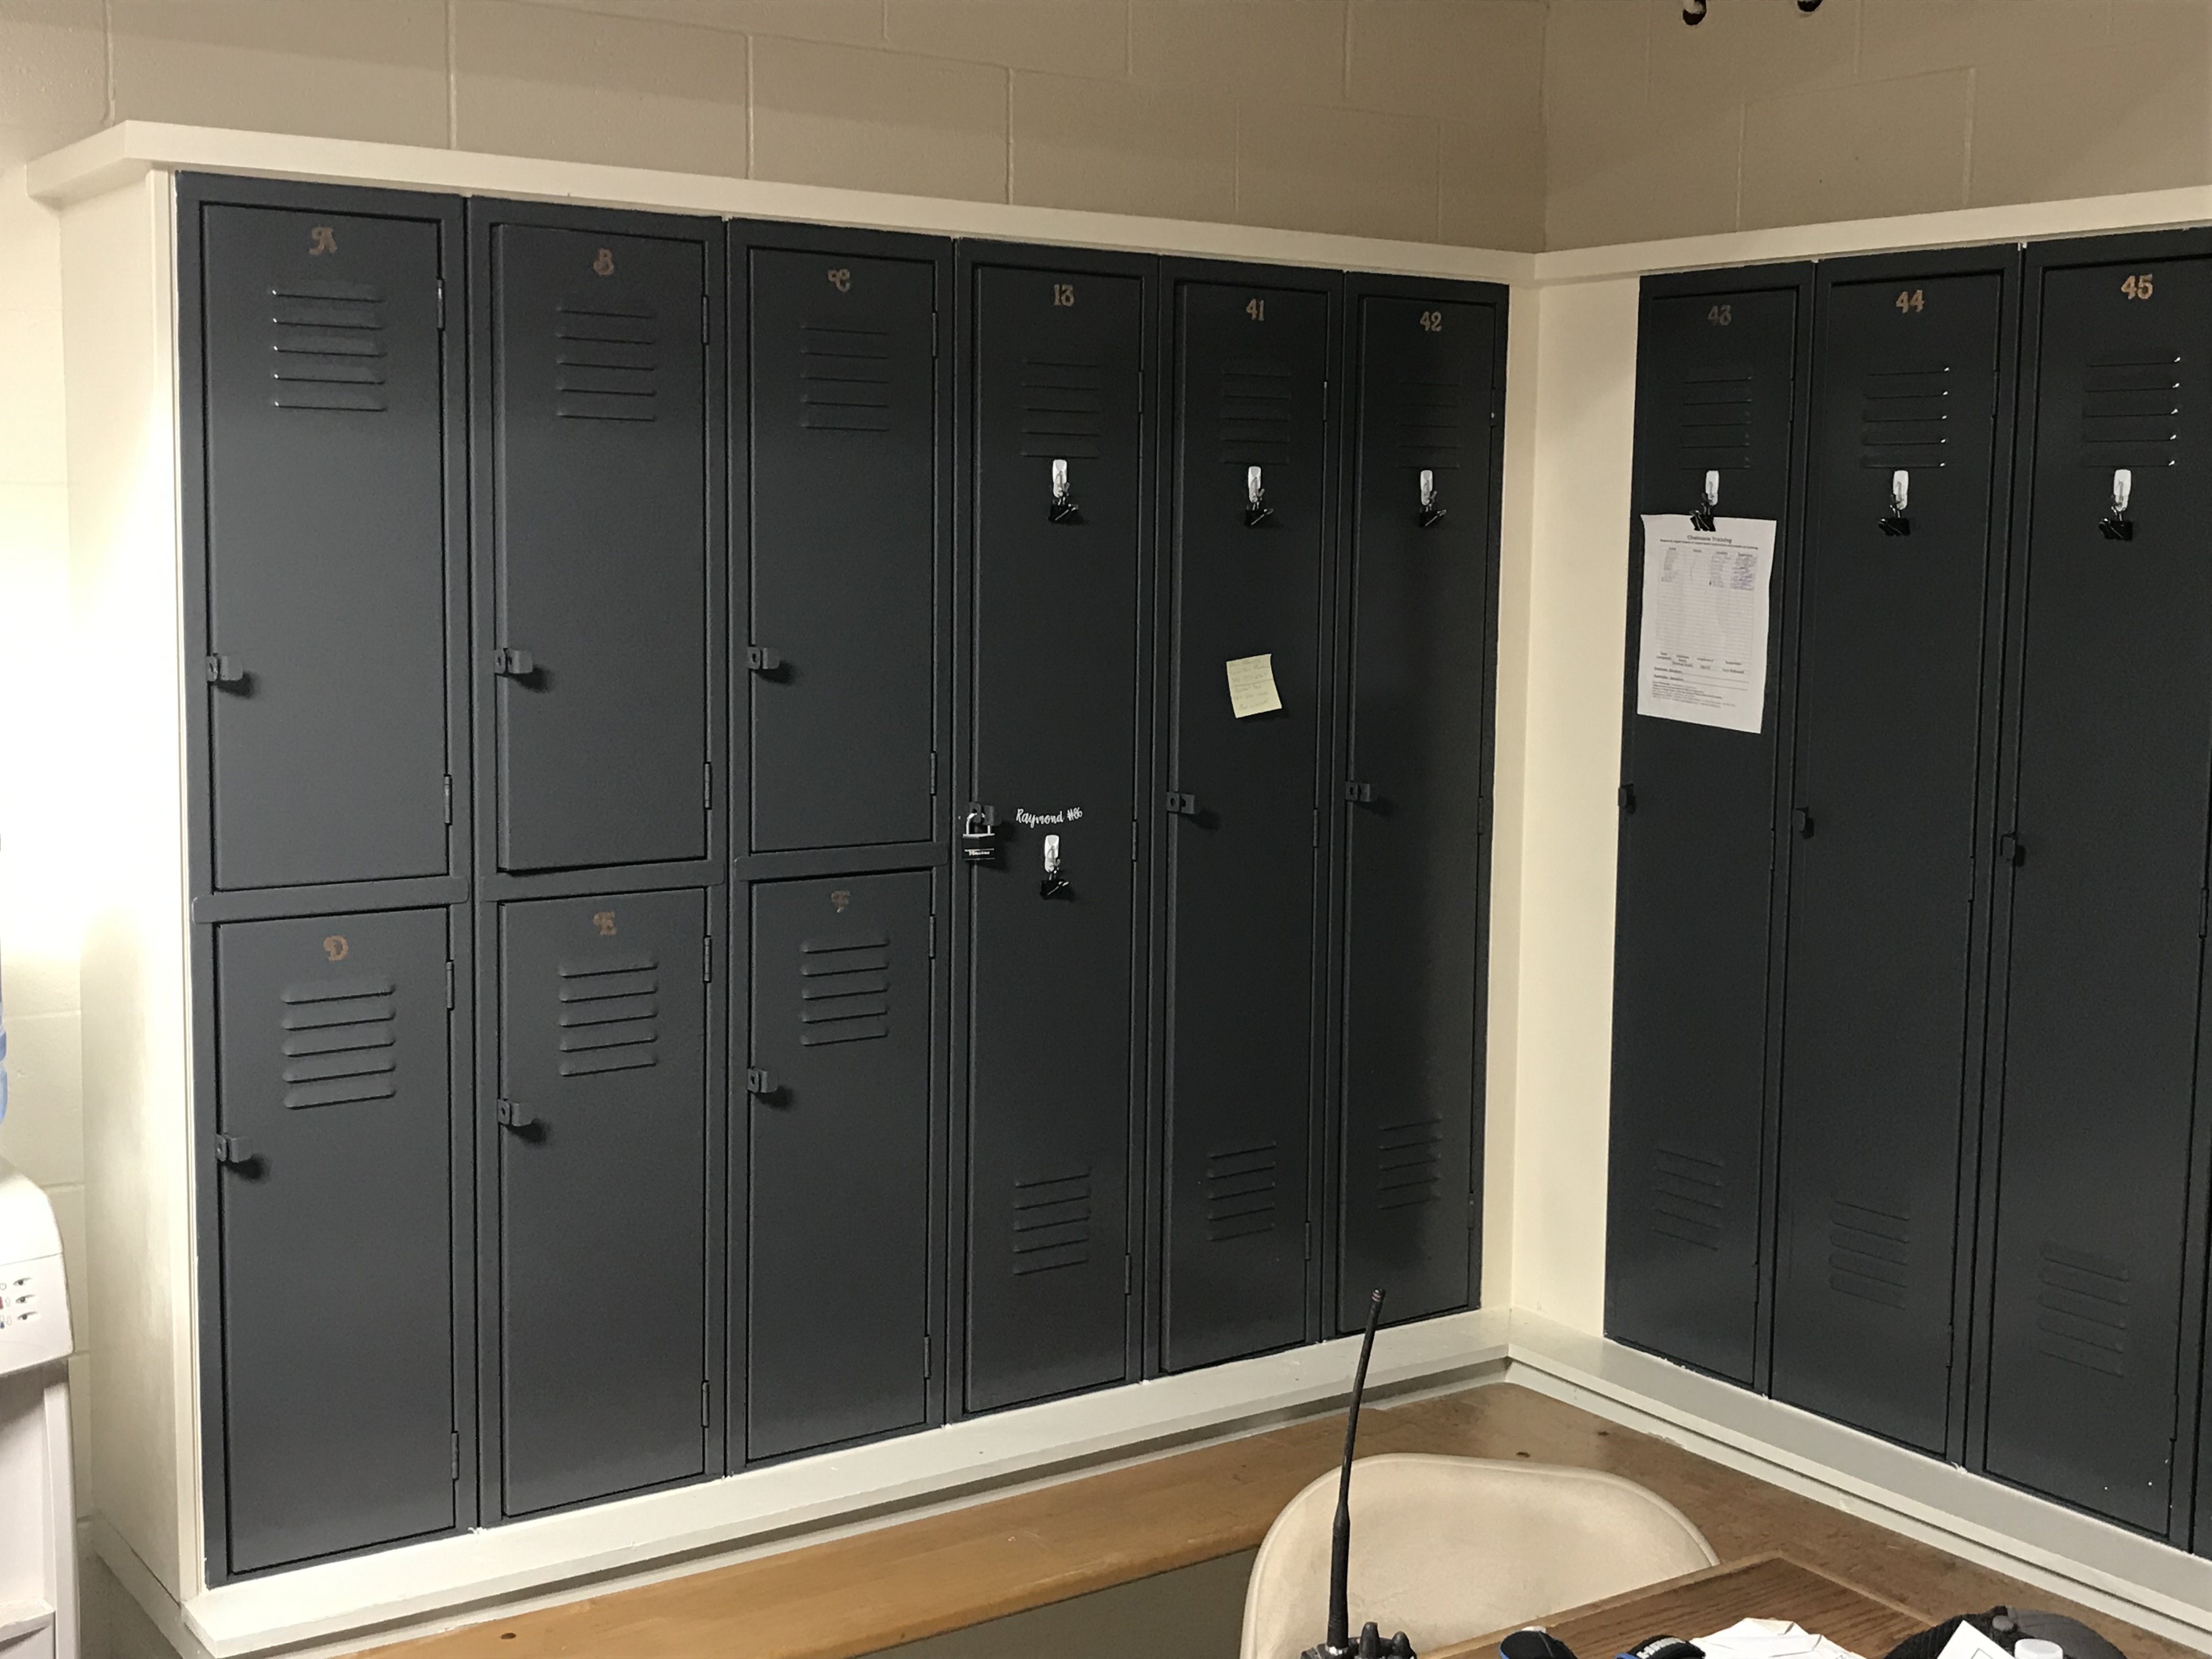 A row of lockers